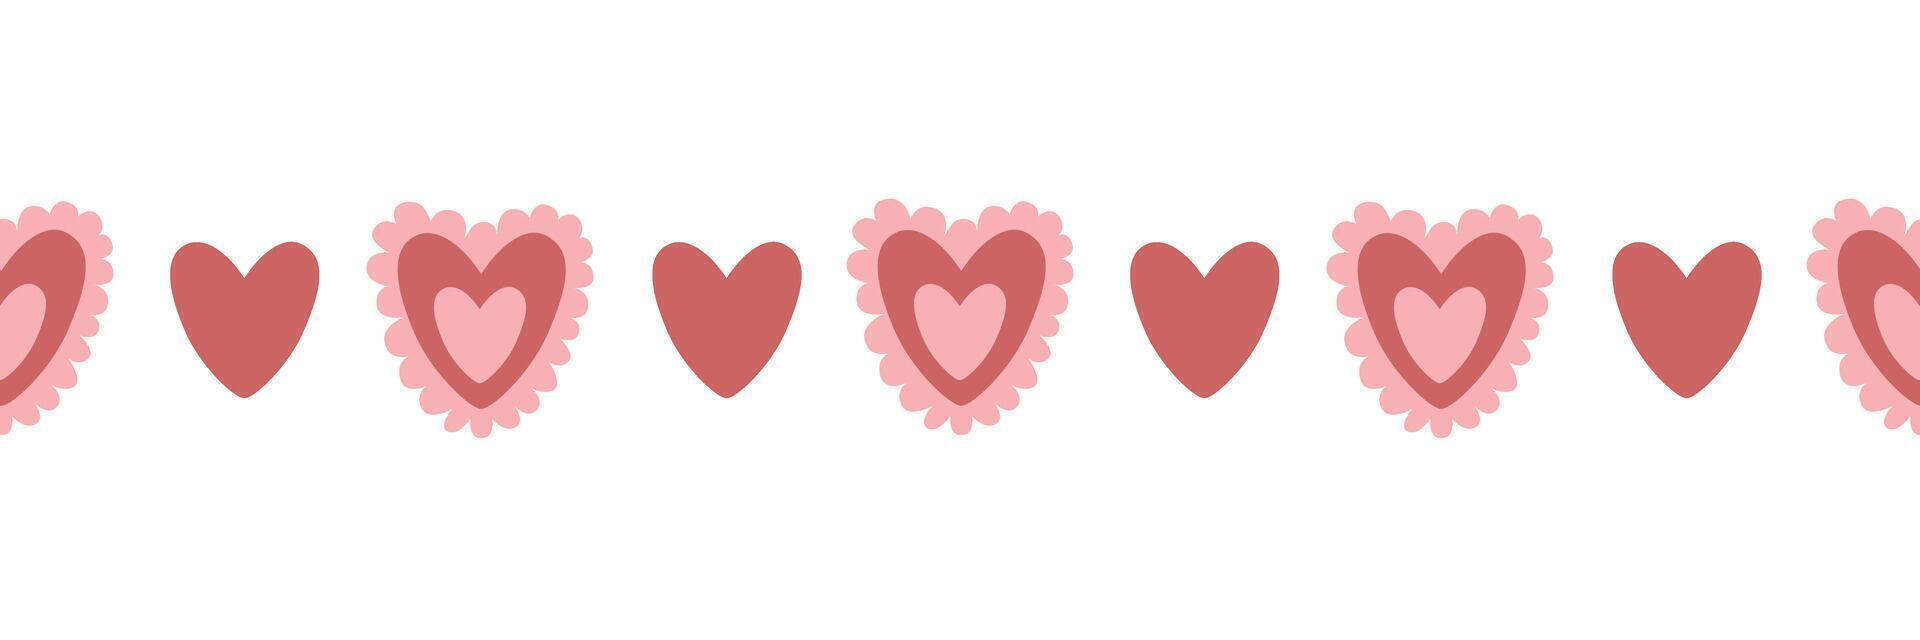 naadloos valentijnsdag dag grens. zoet harten. geïsoleerd vector illustratie. voor websites, groet kaarten, verpakking